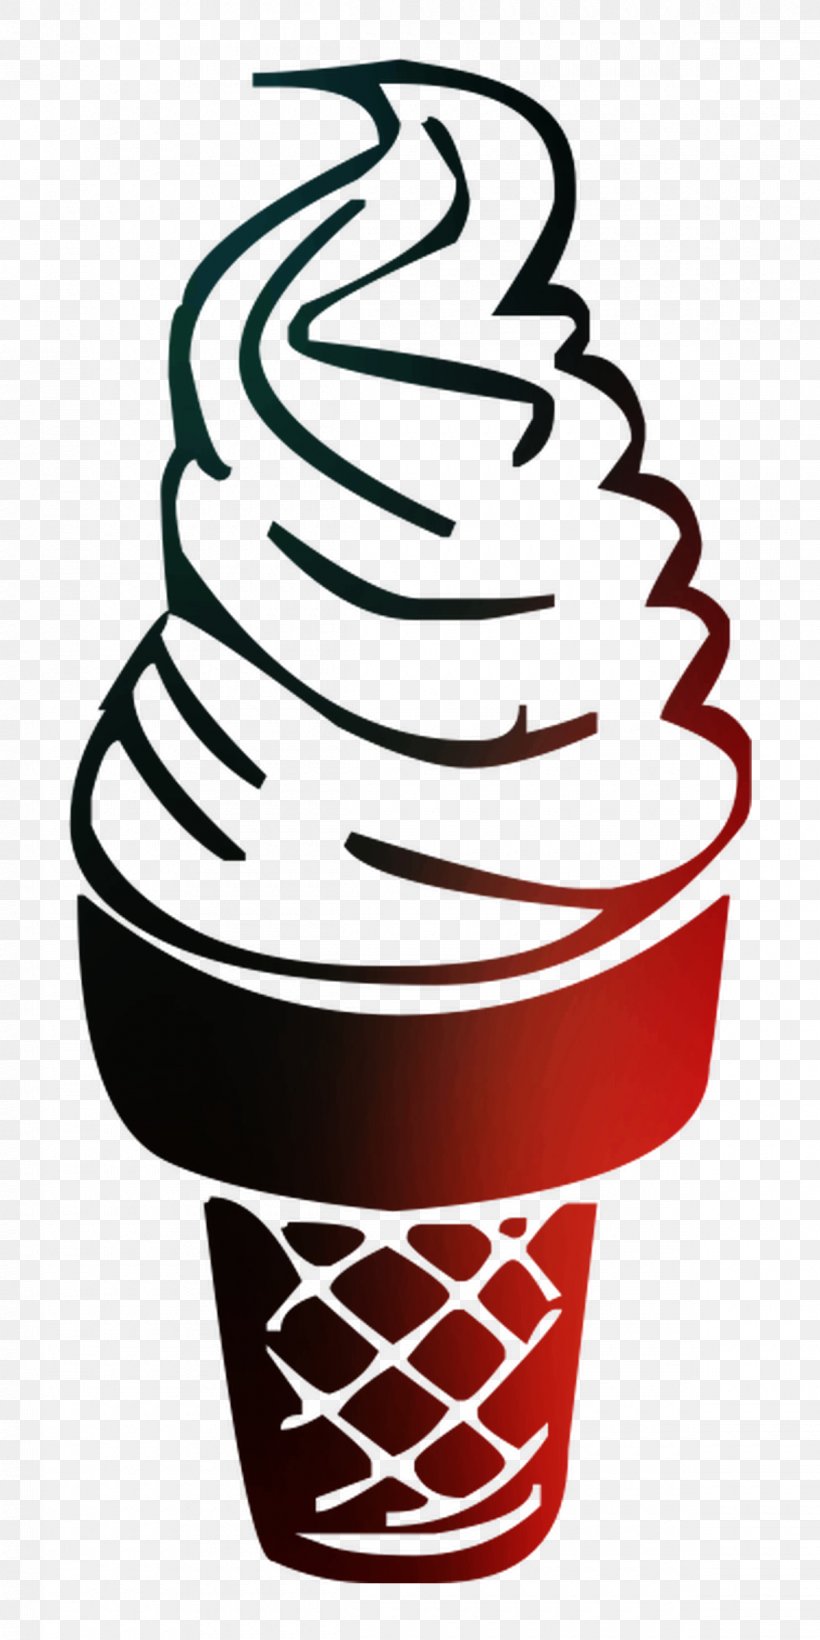 Ice Cream Cones Clip Art Product Design Line, PNG, 1200x2400px, Ice Cream Cones, Cone, Cream, Dairy, Dessert Download Free